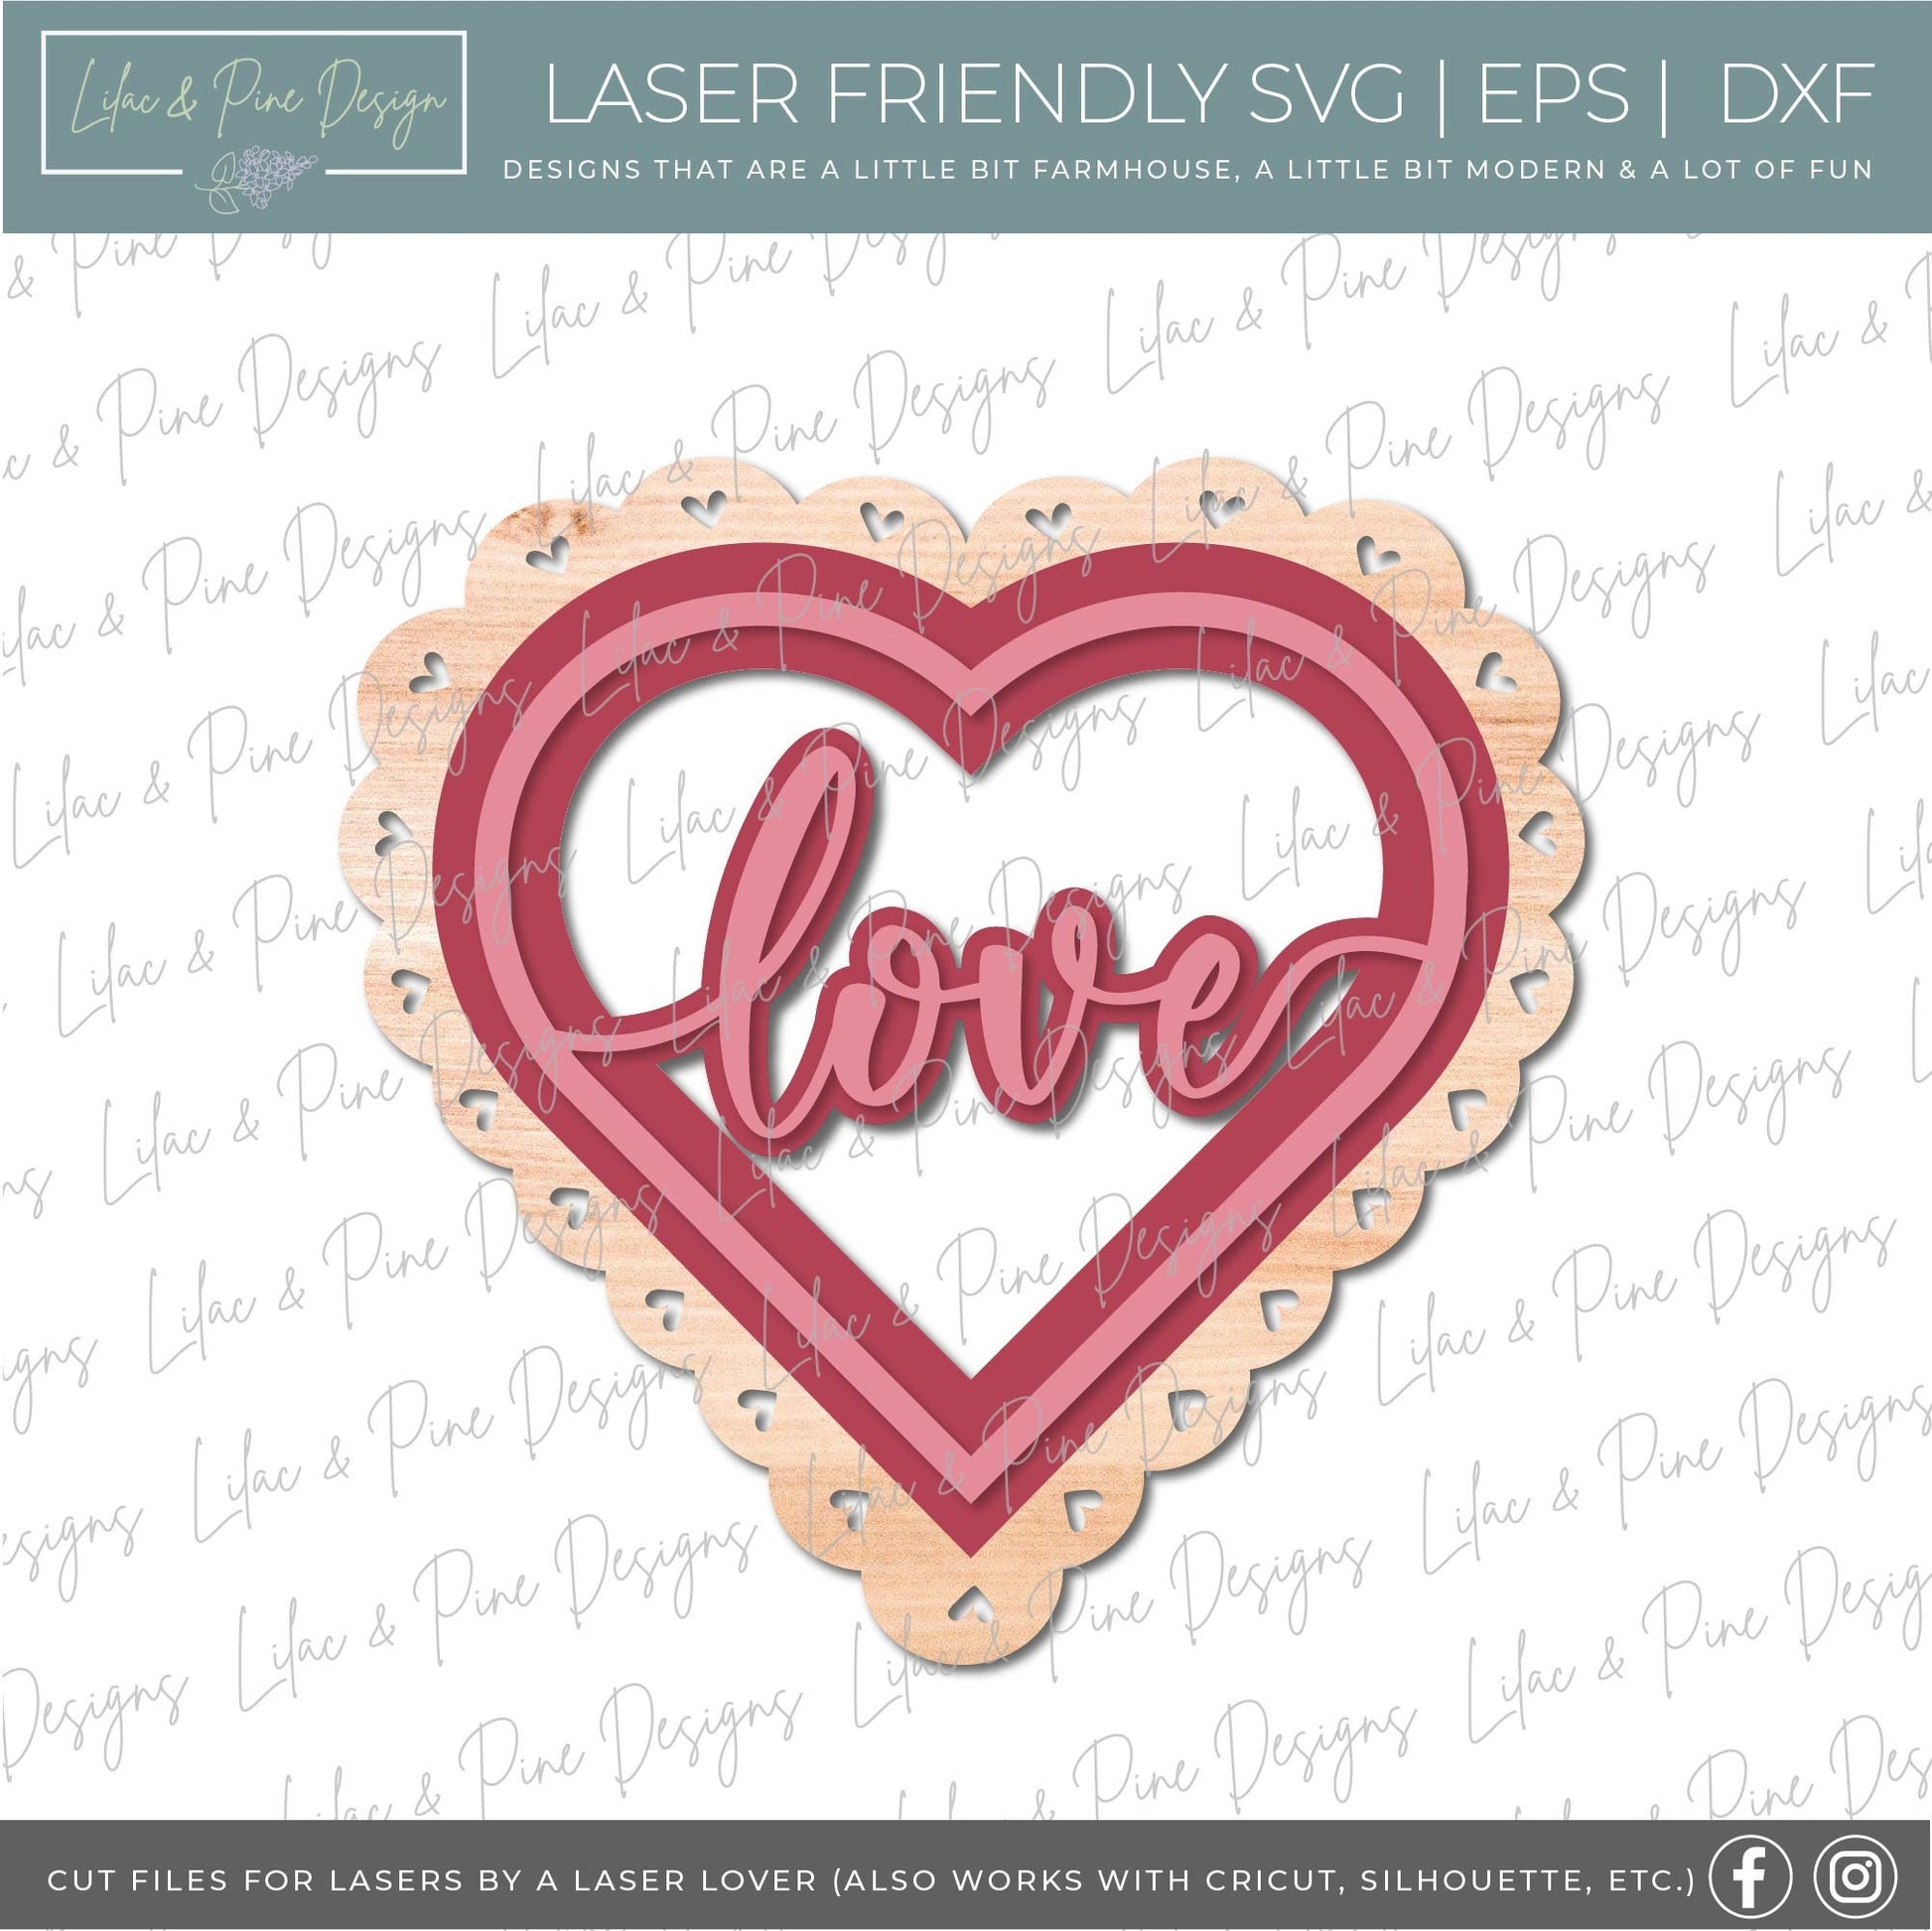 Love heart shaped door hanger, Scalloped Heart Welcome sign SVG, Valentine sign SVG, Valentines Day decor SVG, Glowforge file, laser svg